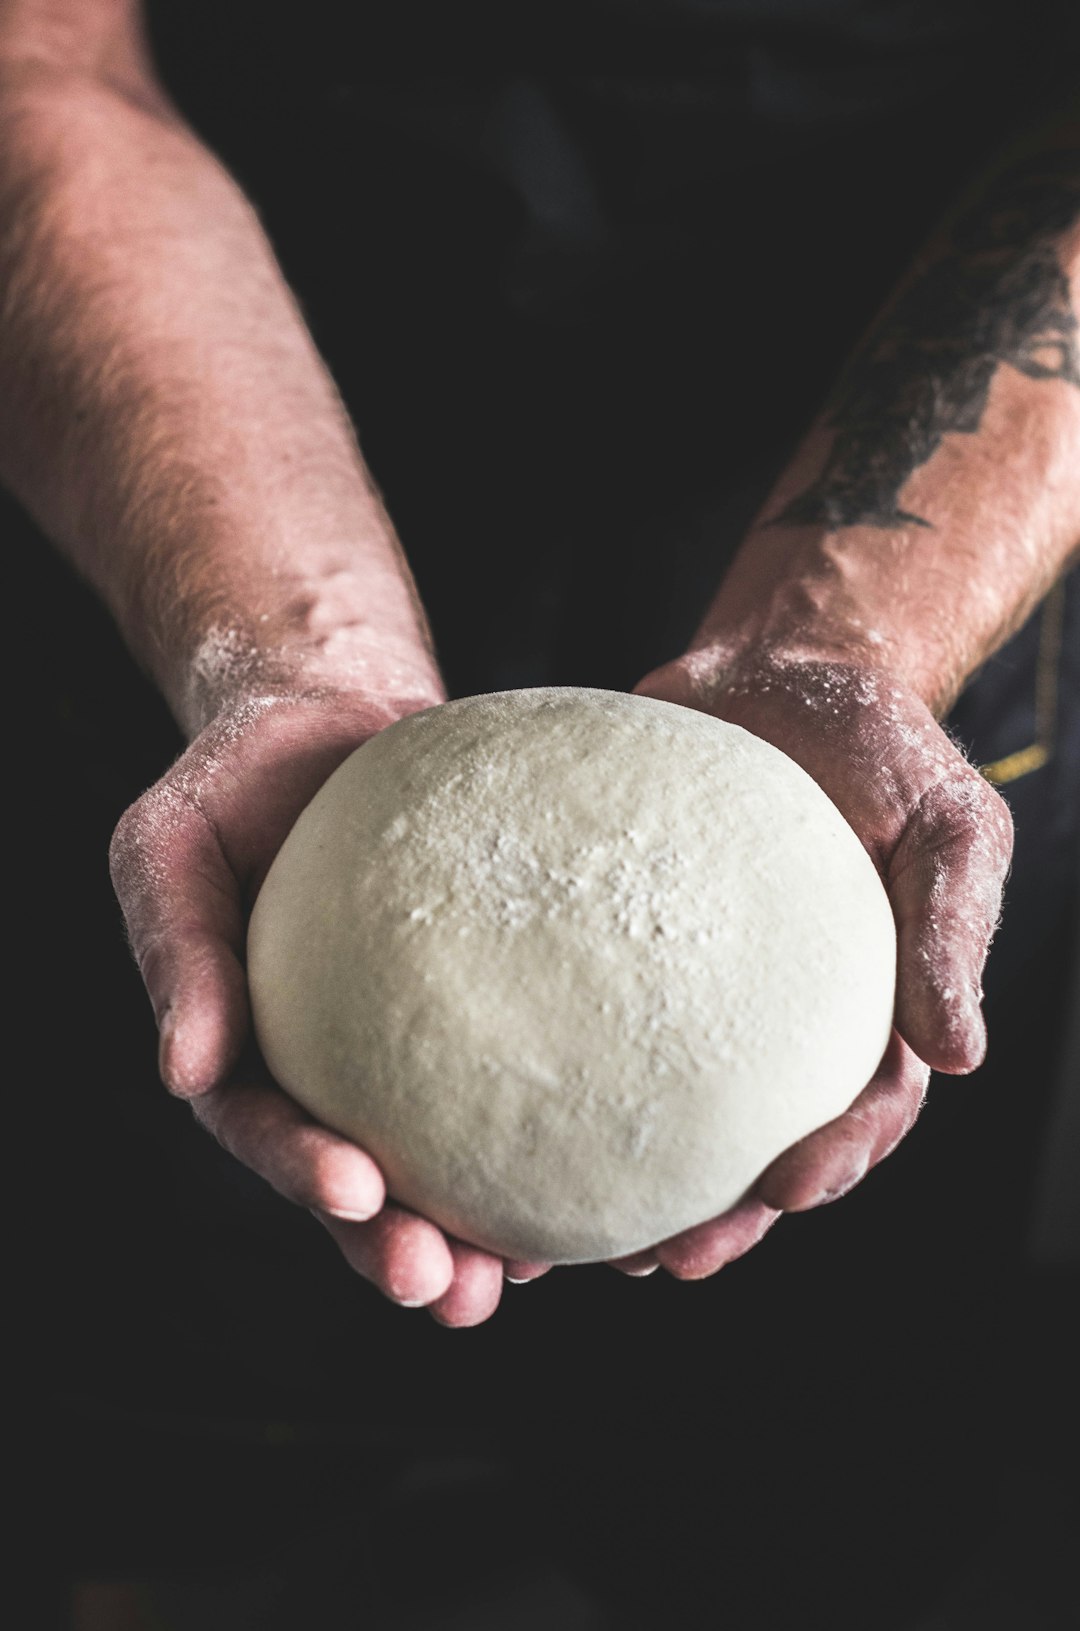 The dough